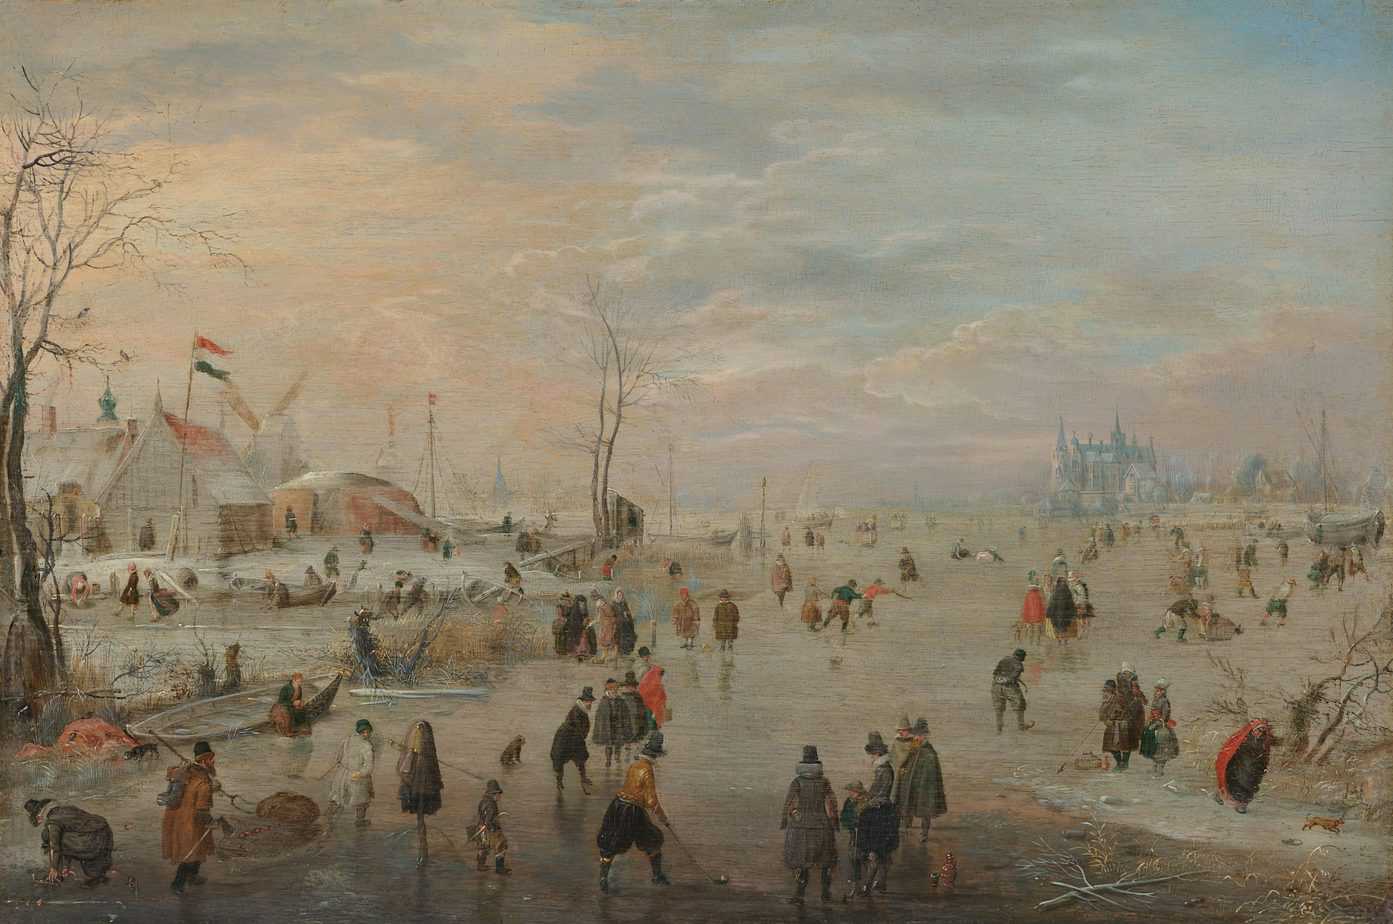 Enjoying the Ice, Hendrick Avercamp, c. 1615 - c. 1620